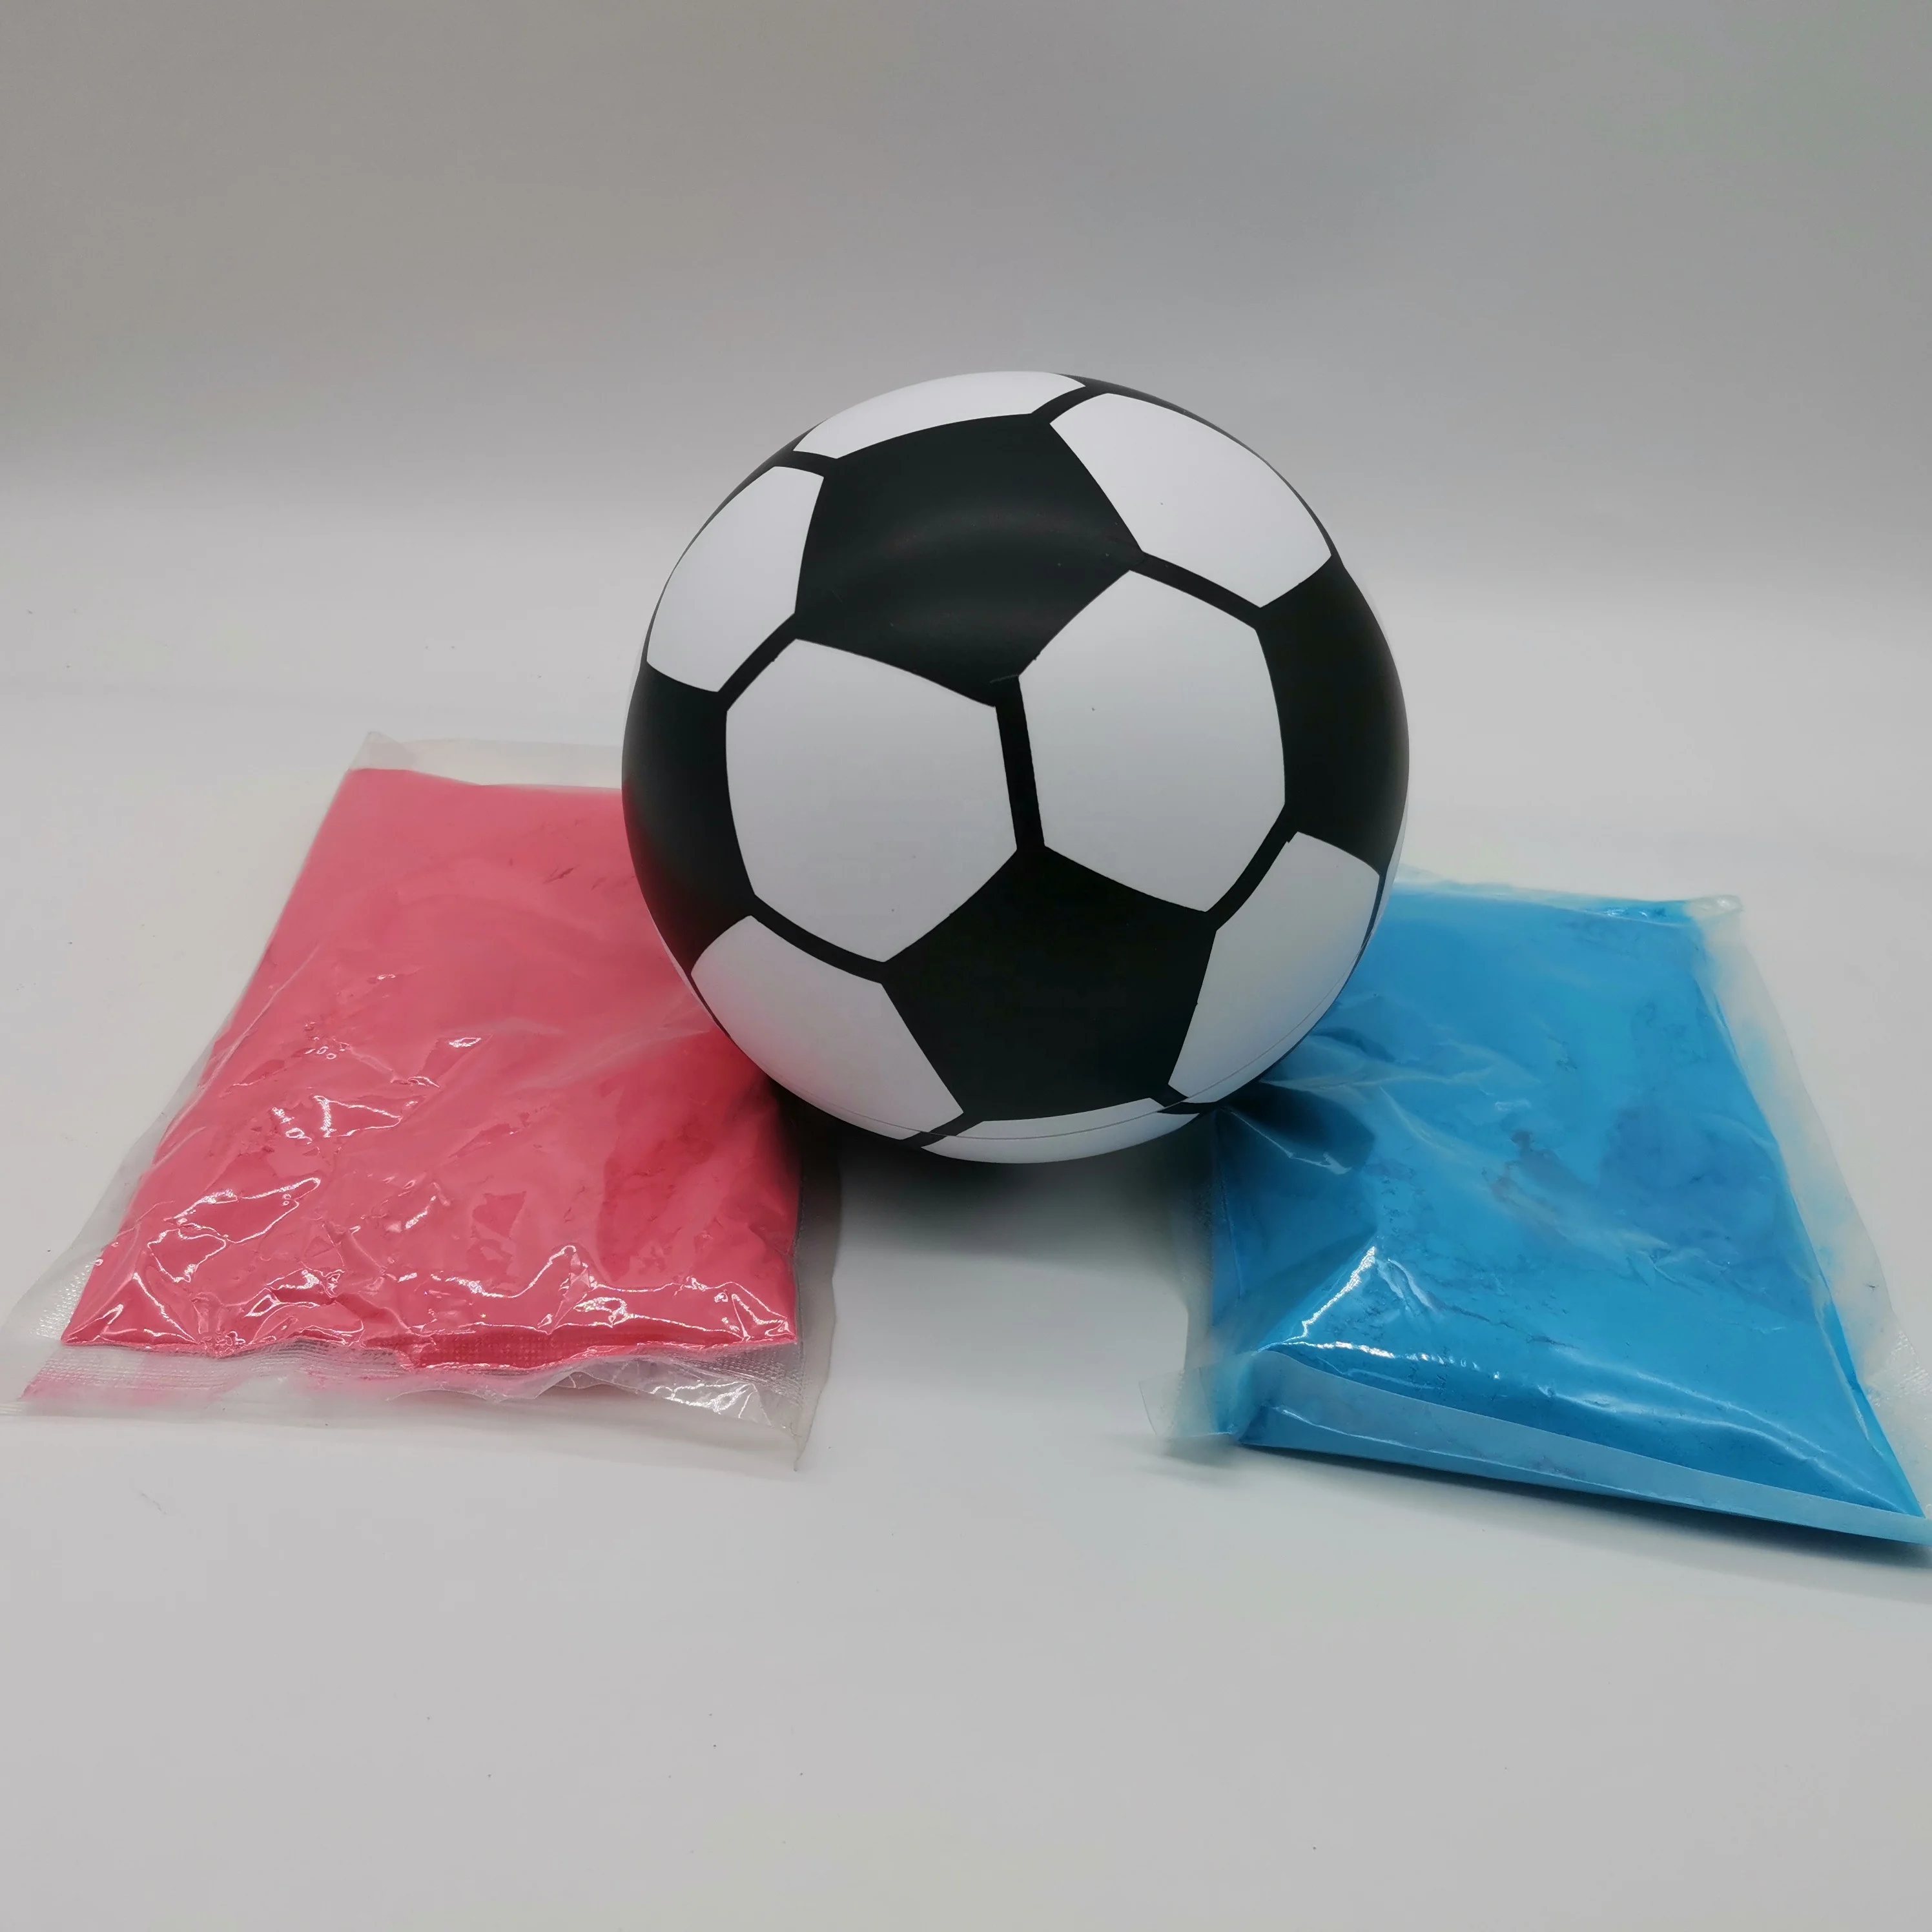 Gender Reveal Exploding Powder pallone da calcio con Kit di